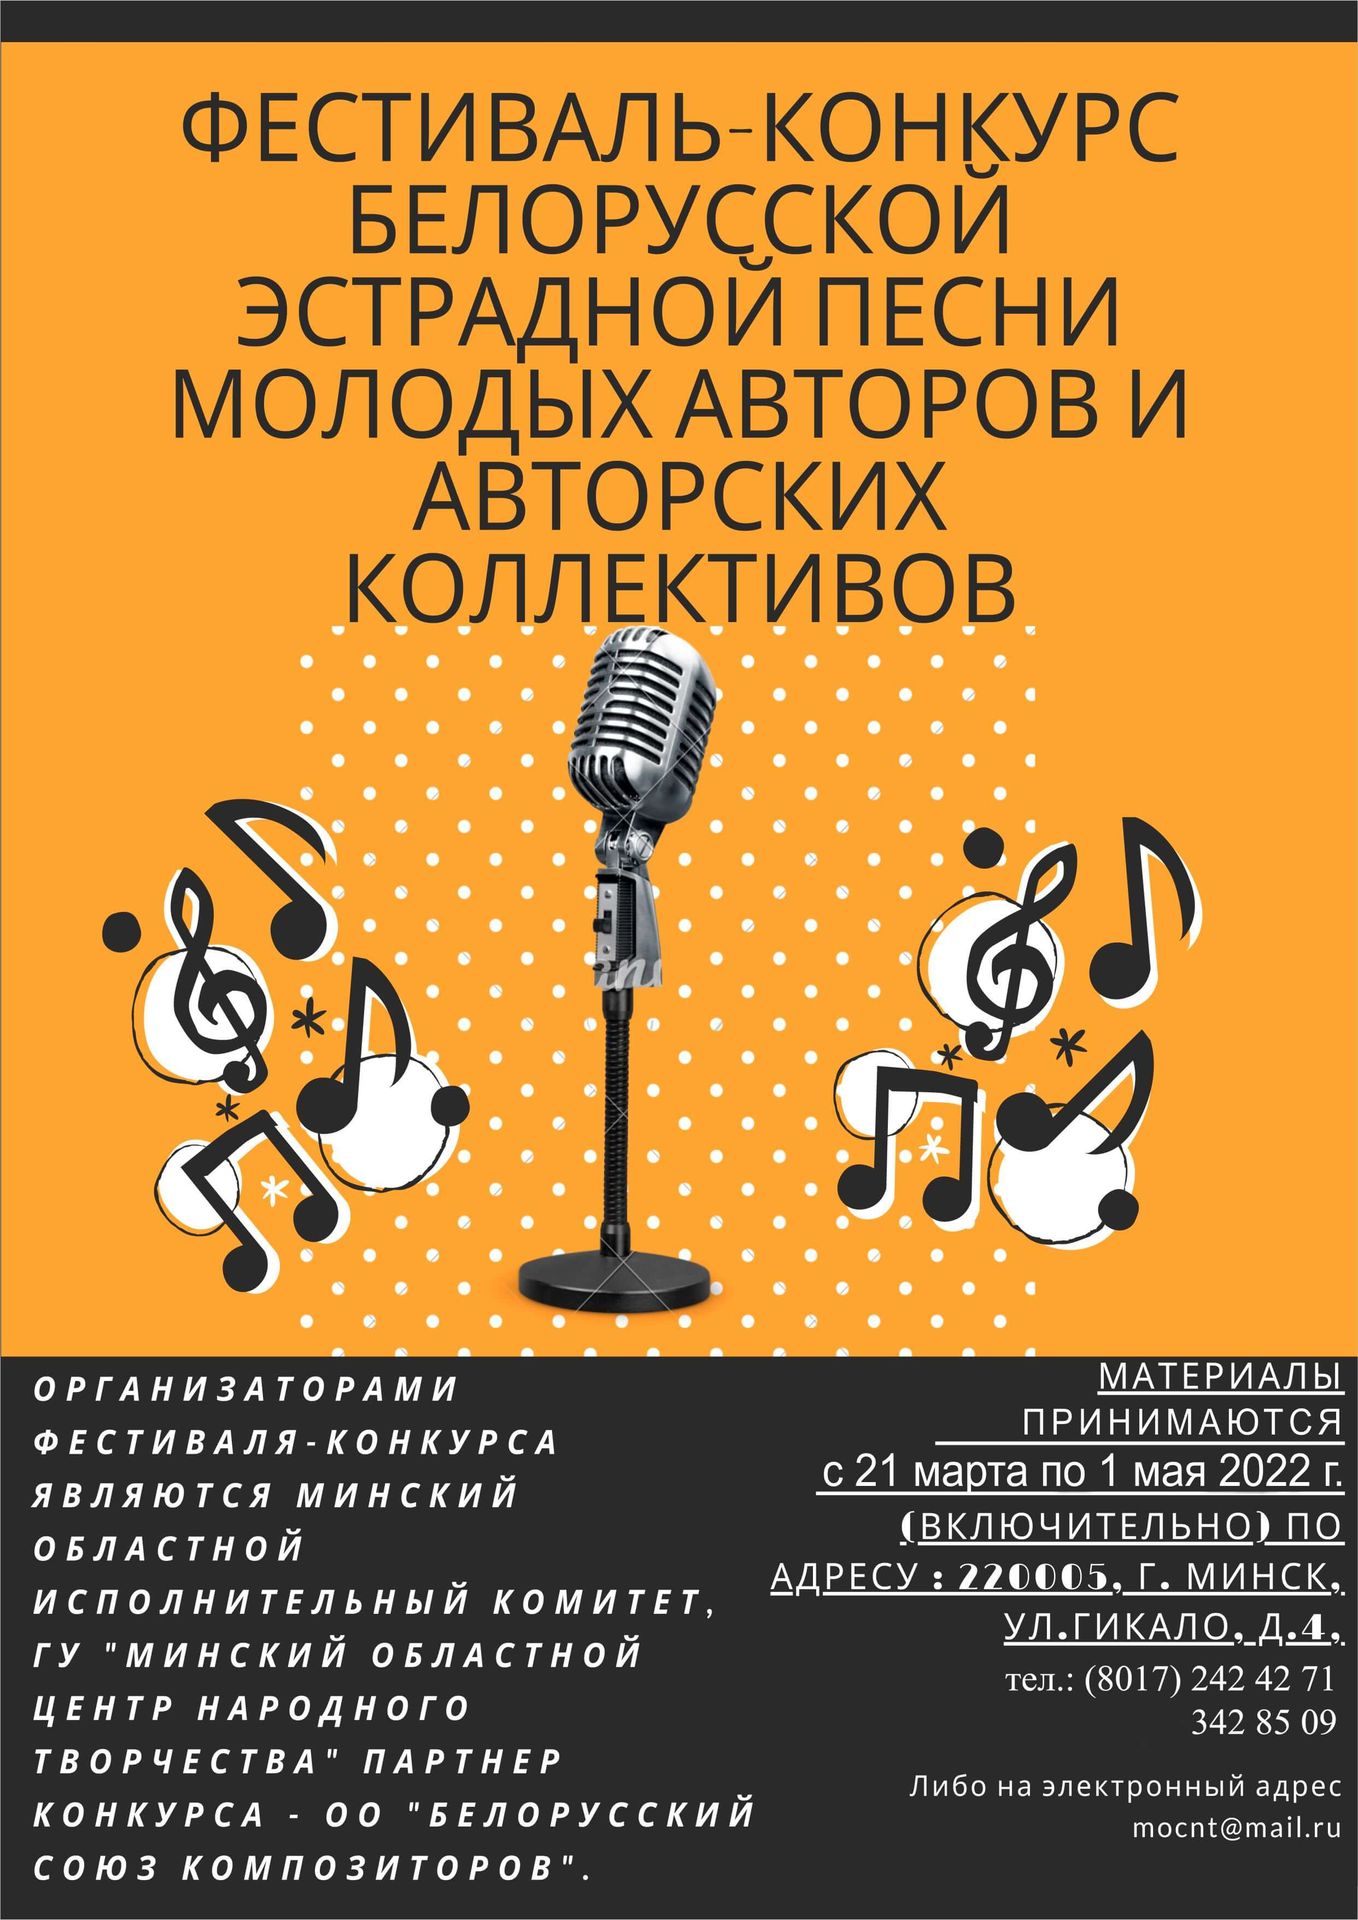 Фестиваль-конкурс белорусской эстрадной песни молодых авторов и авторских коллективов